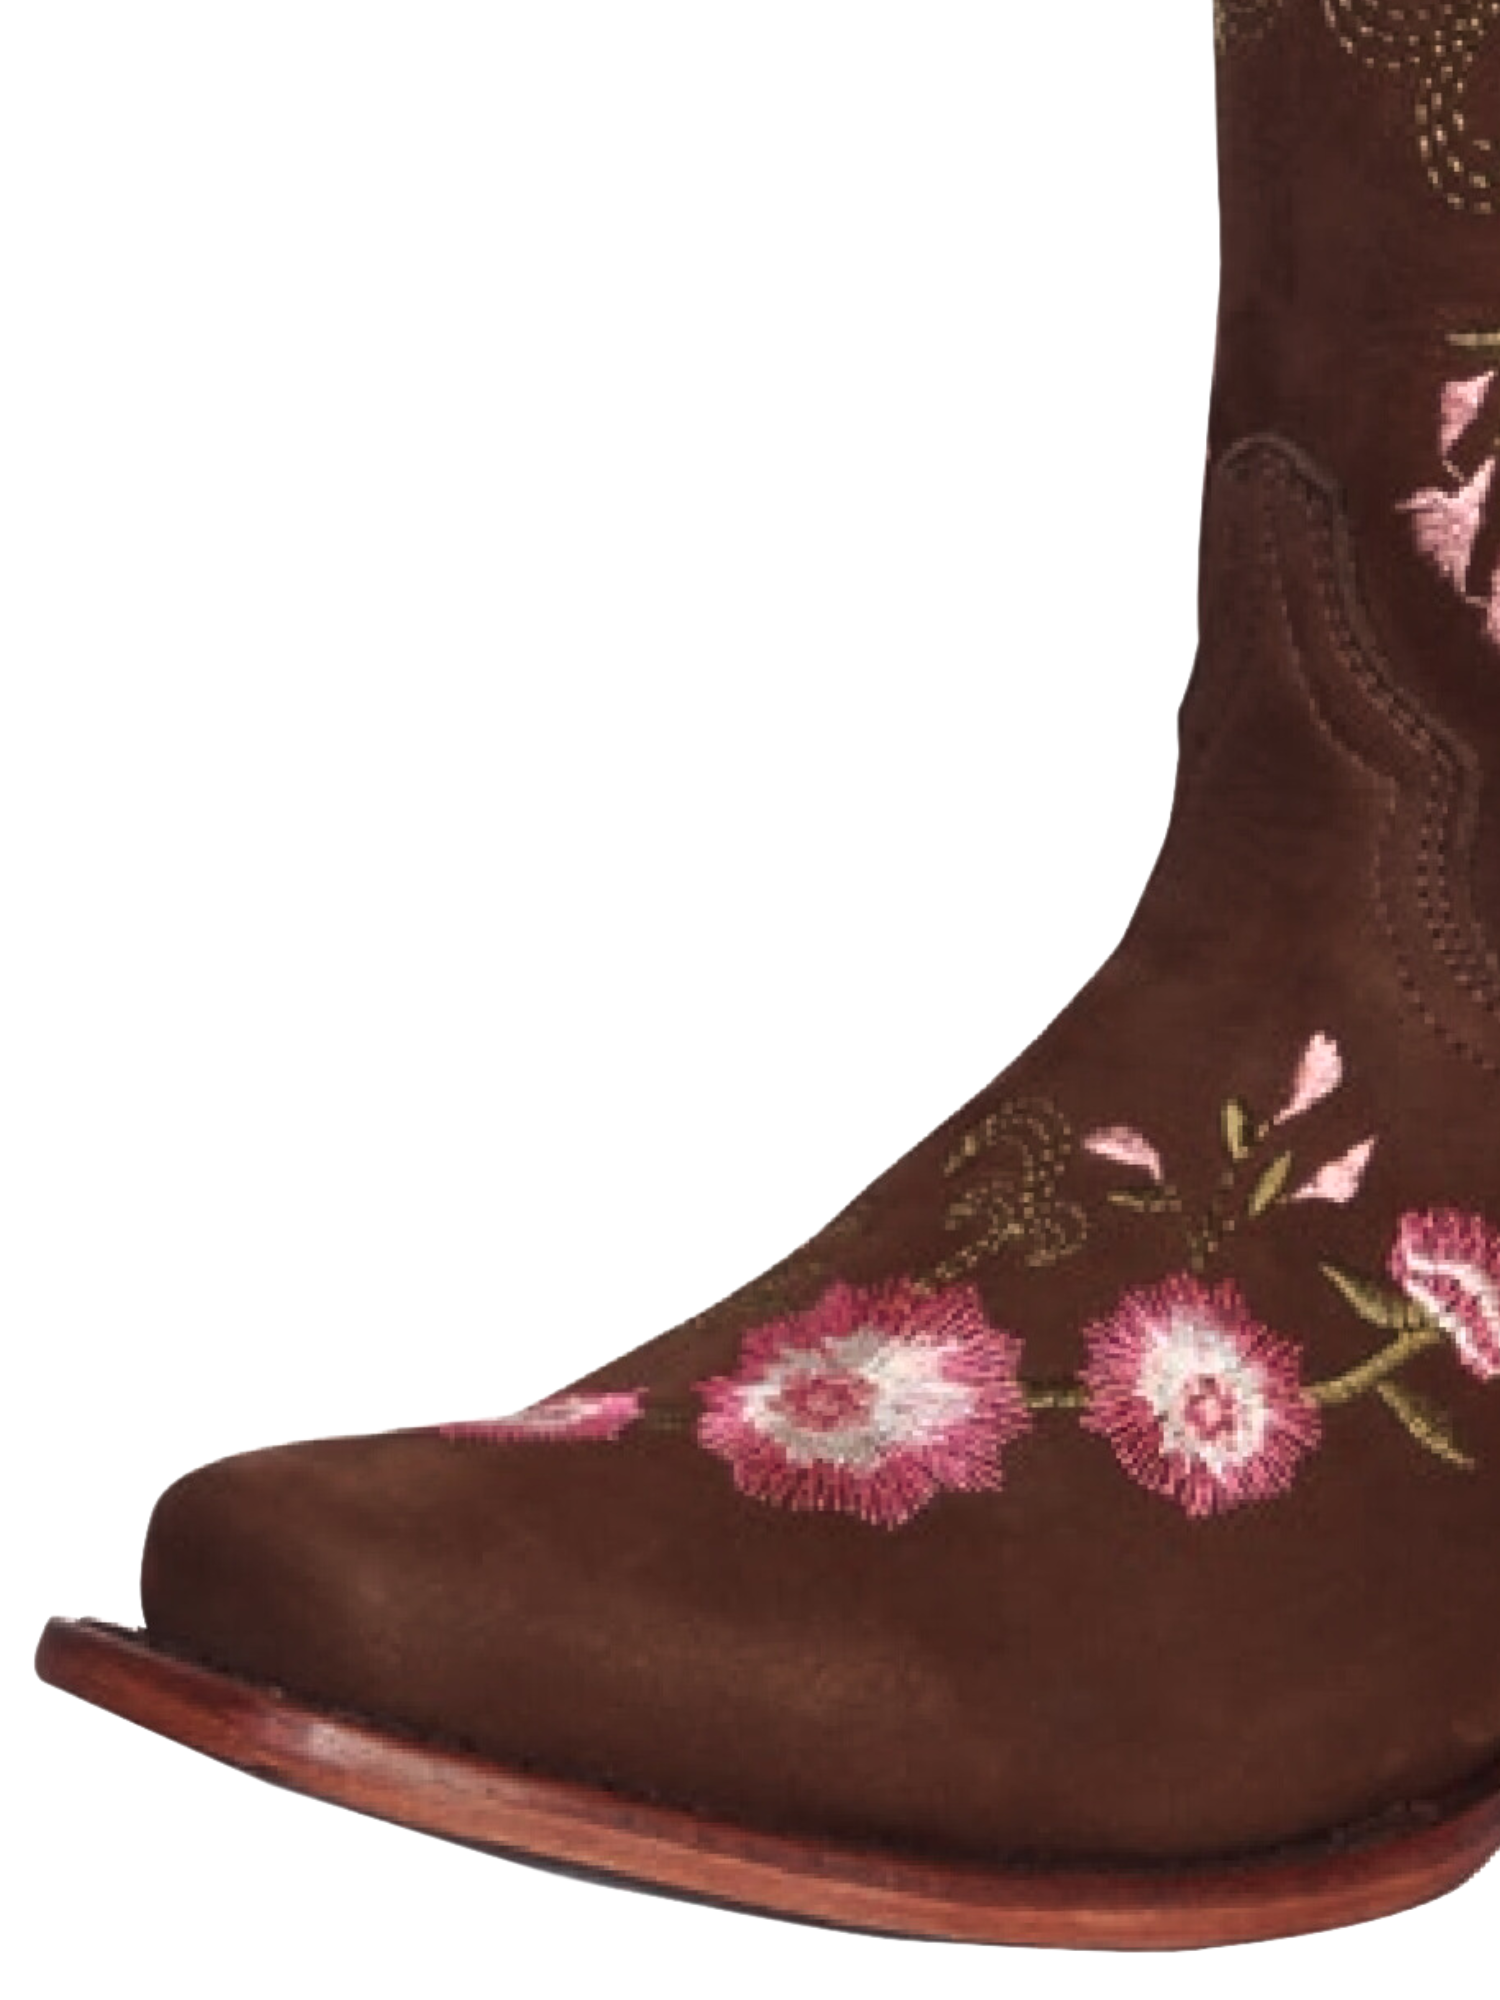 Botas Vaqueras Rodeo con Tubo Bordado de Flores de Piel Nobuck para Mujer 'El General' - ID: 41842 Cowgirl Boots El General 